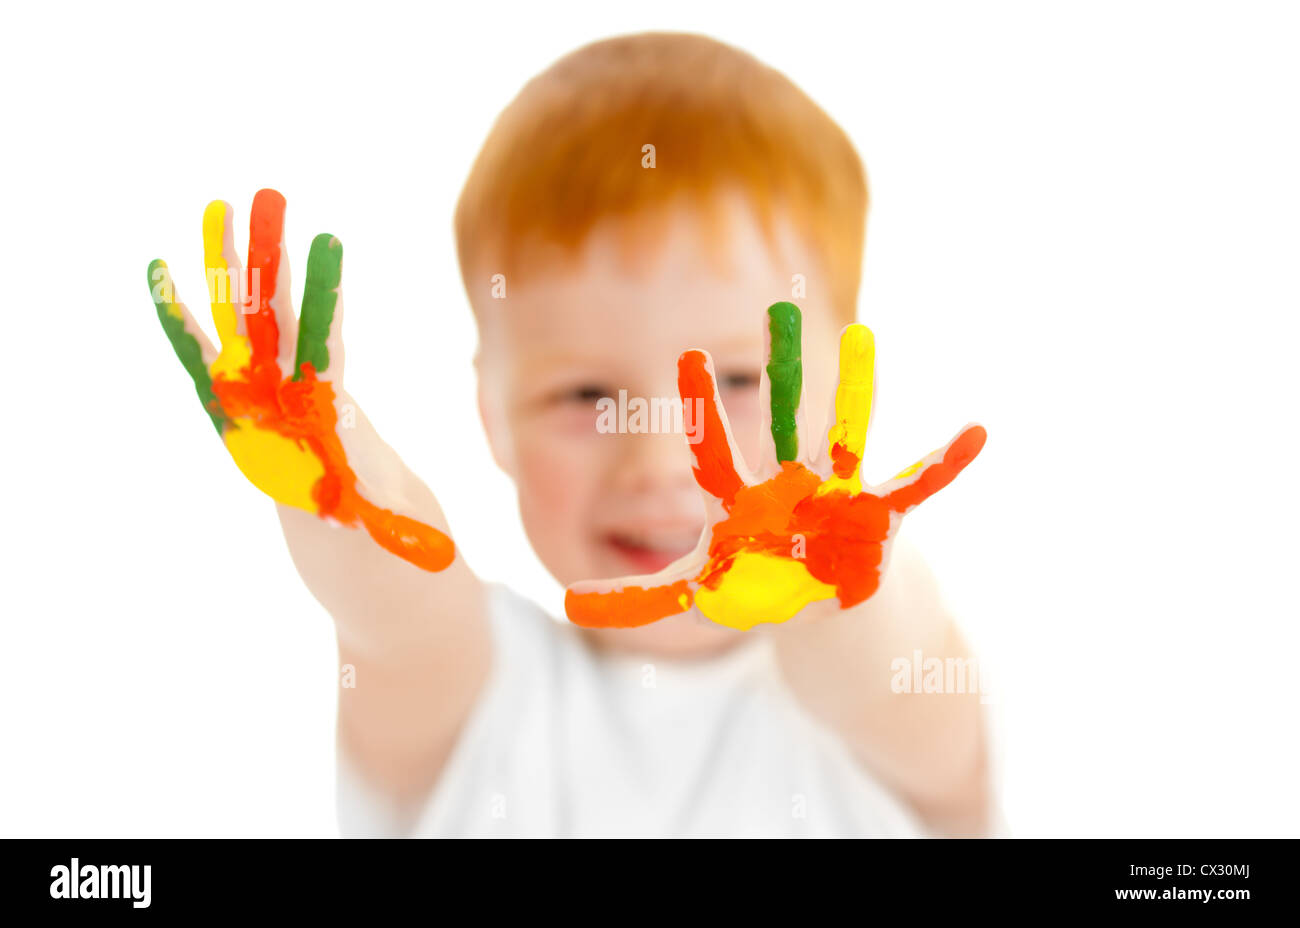 Bezaubernde rothaarige junge mit Fokus auf Hände, die in hellen Farben gemalt Stockfoto